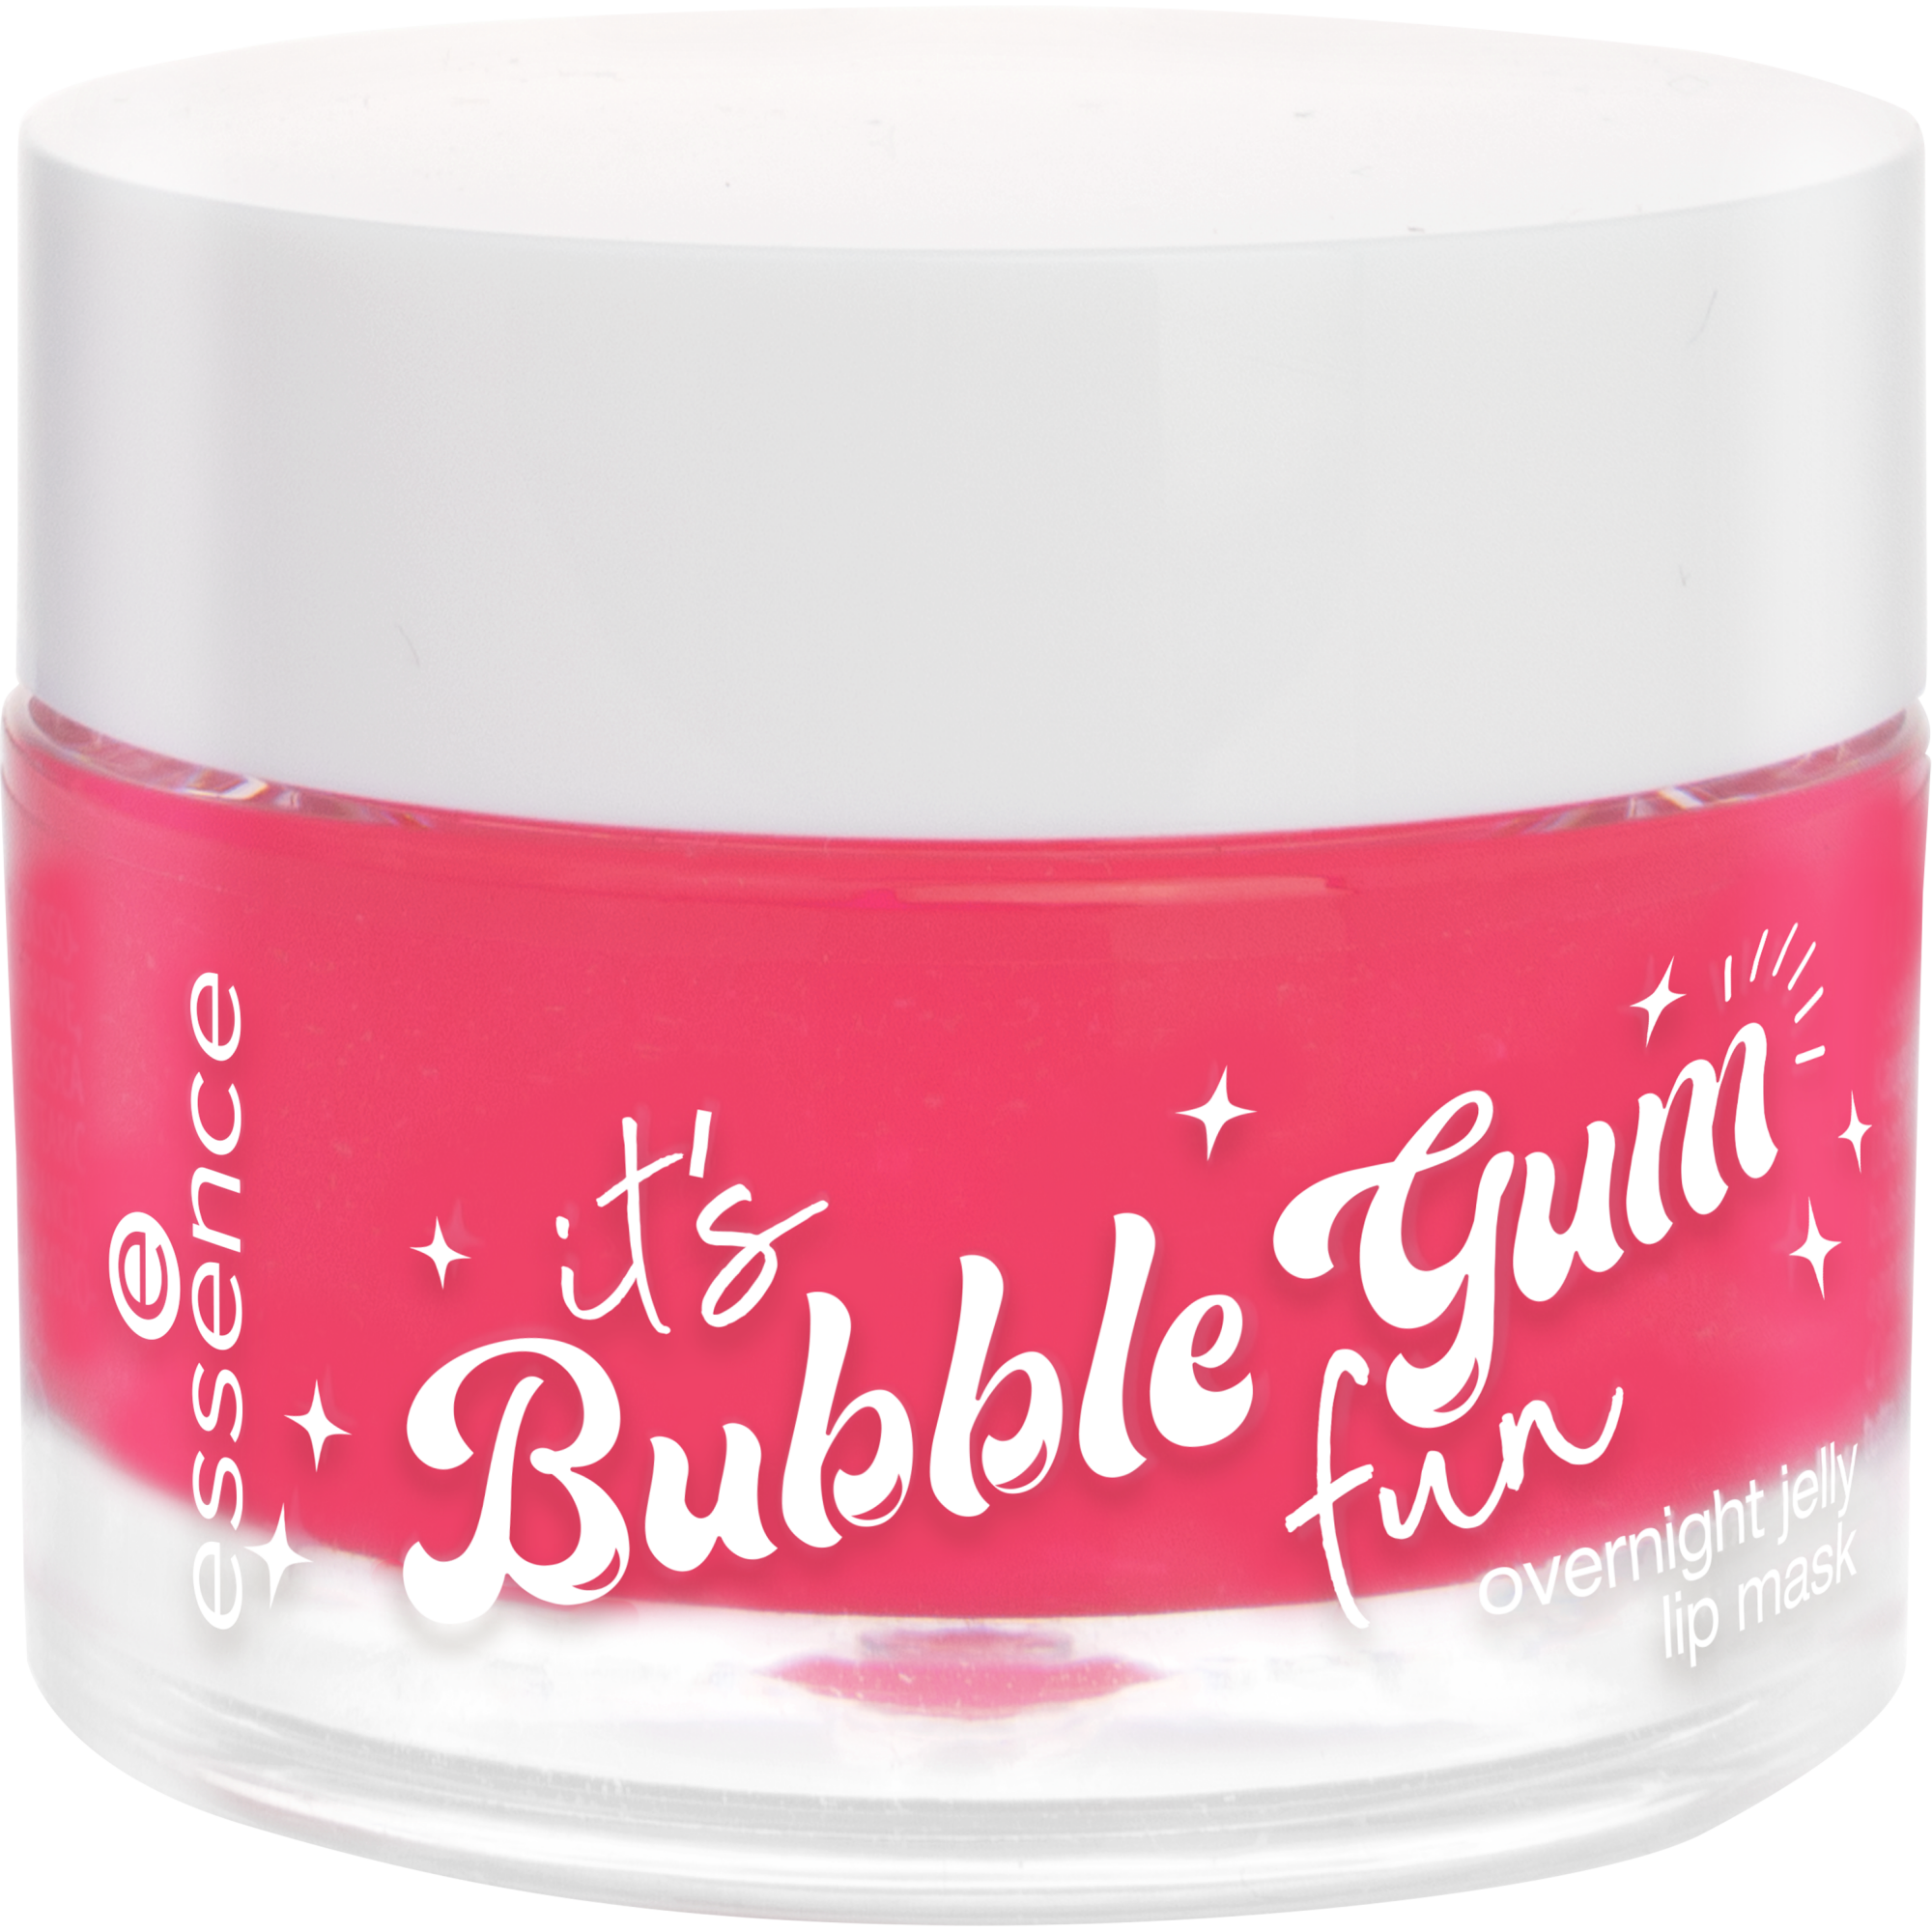 it's Bubble Gum fun overnight jelly lip mask